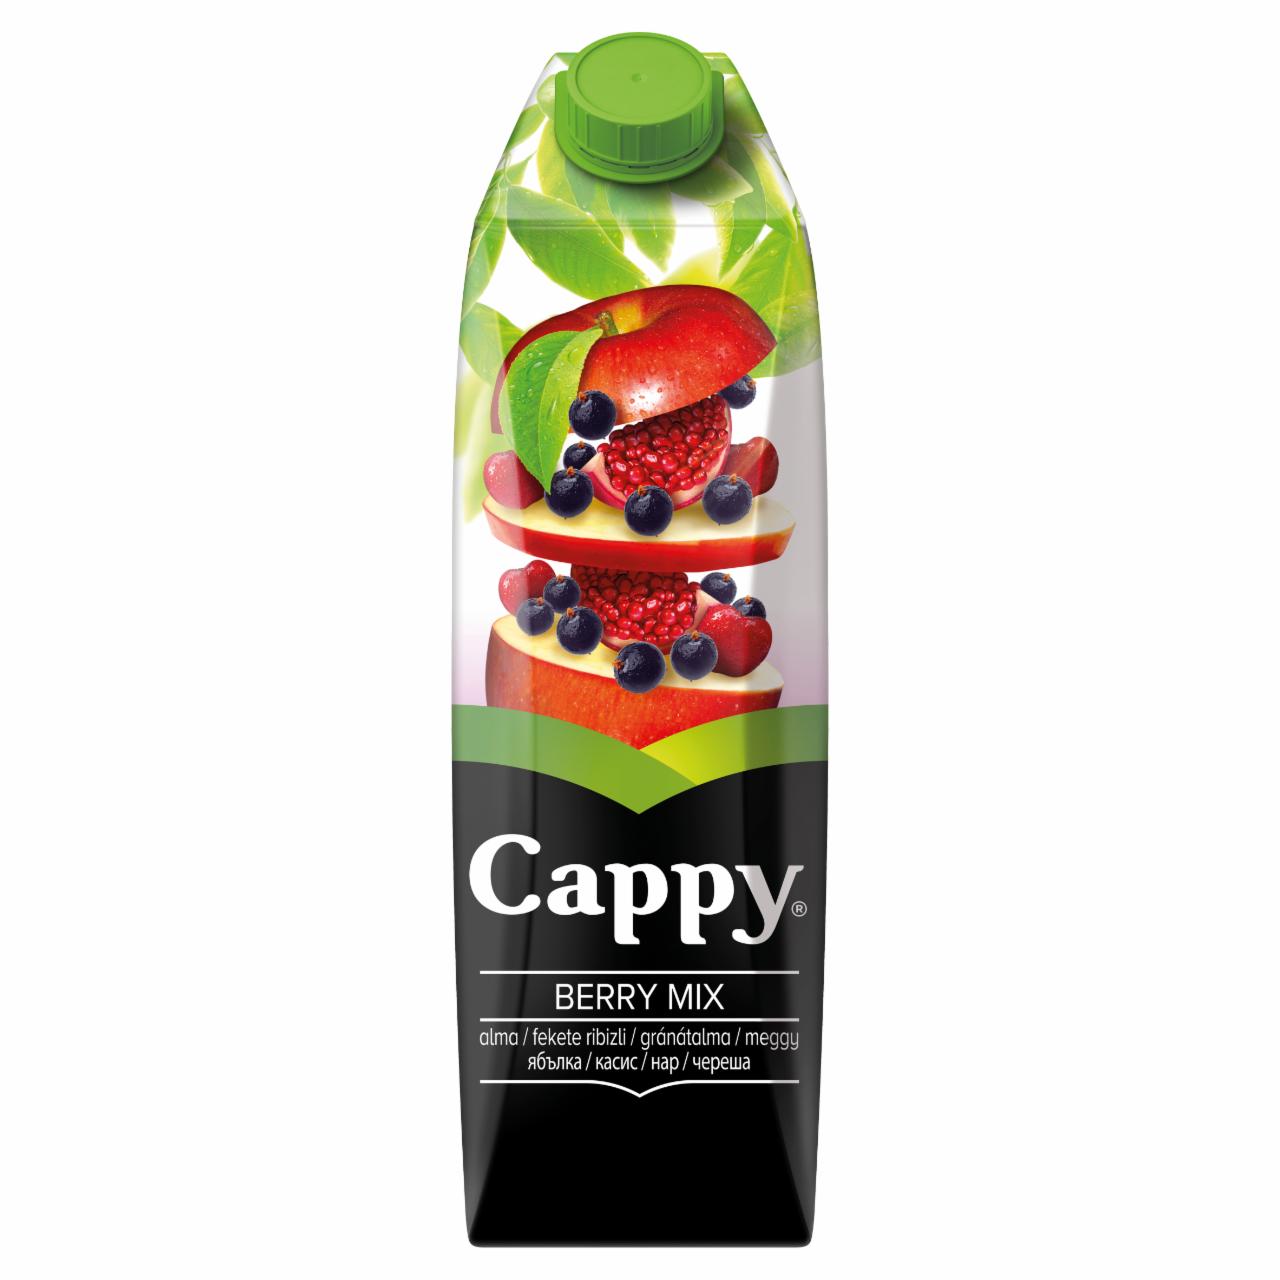 Képek - Cappy Berry Mix piros gyümölcsital bogyós gyümölcsökkel 1 l